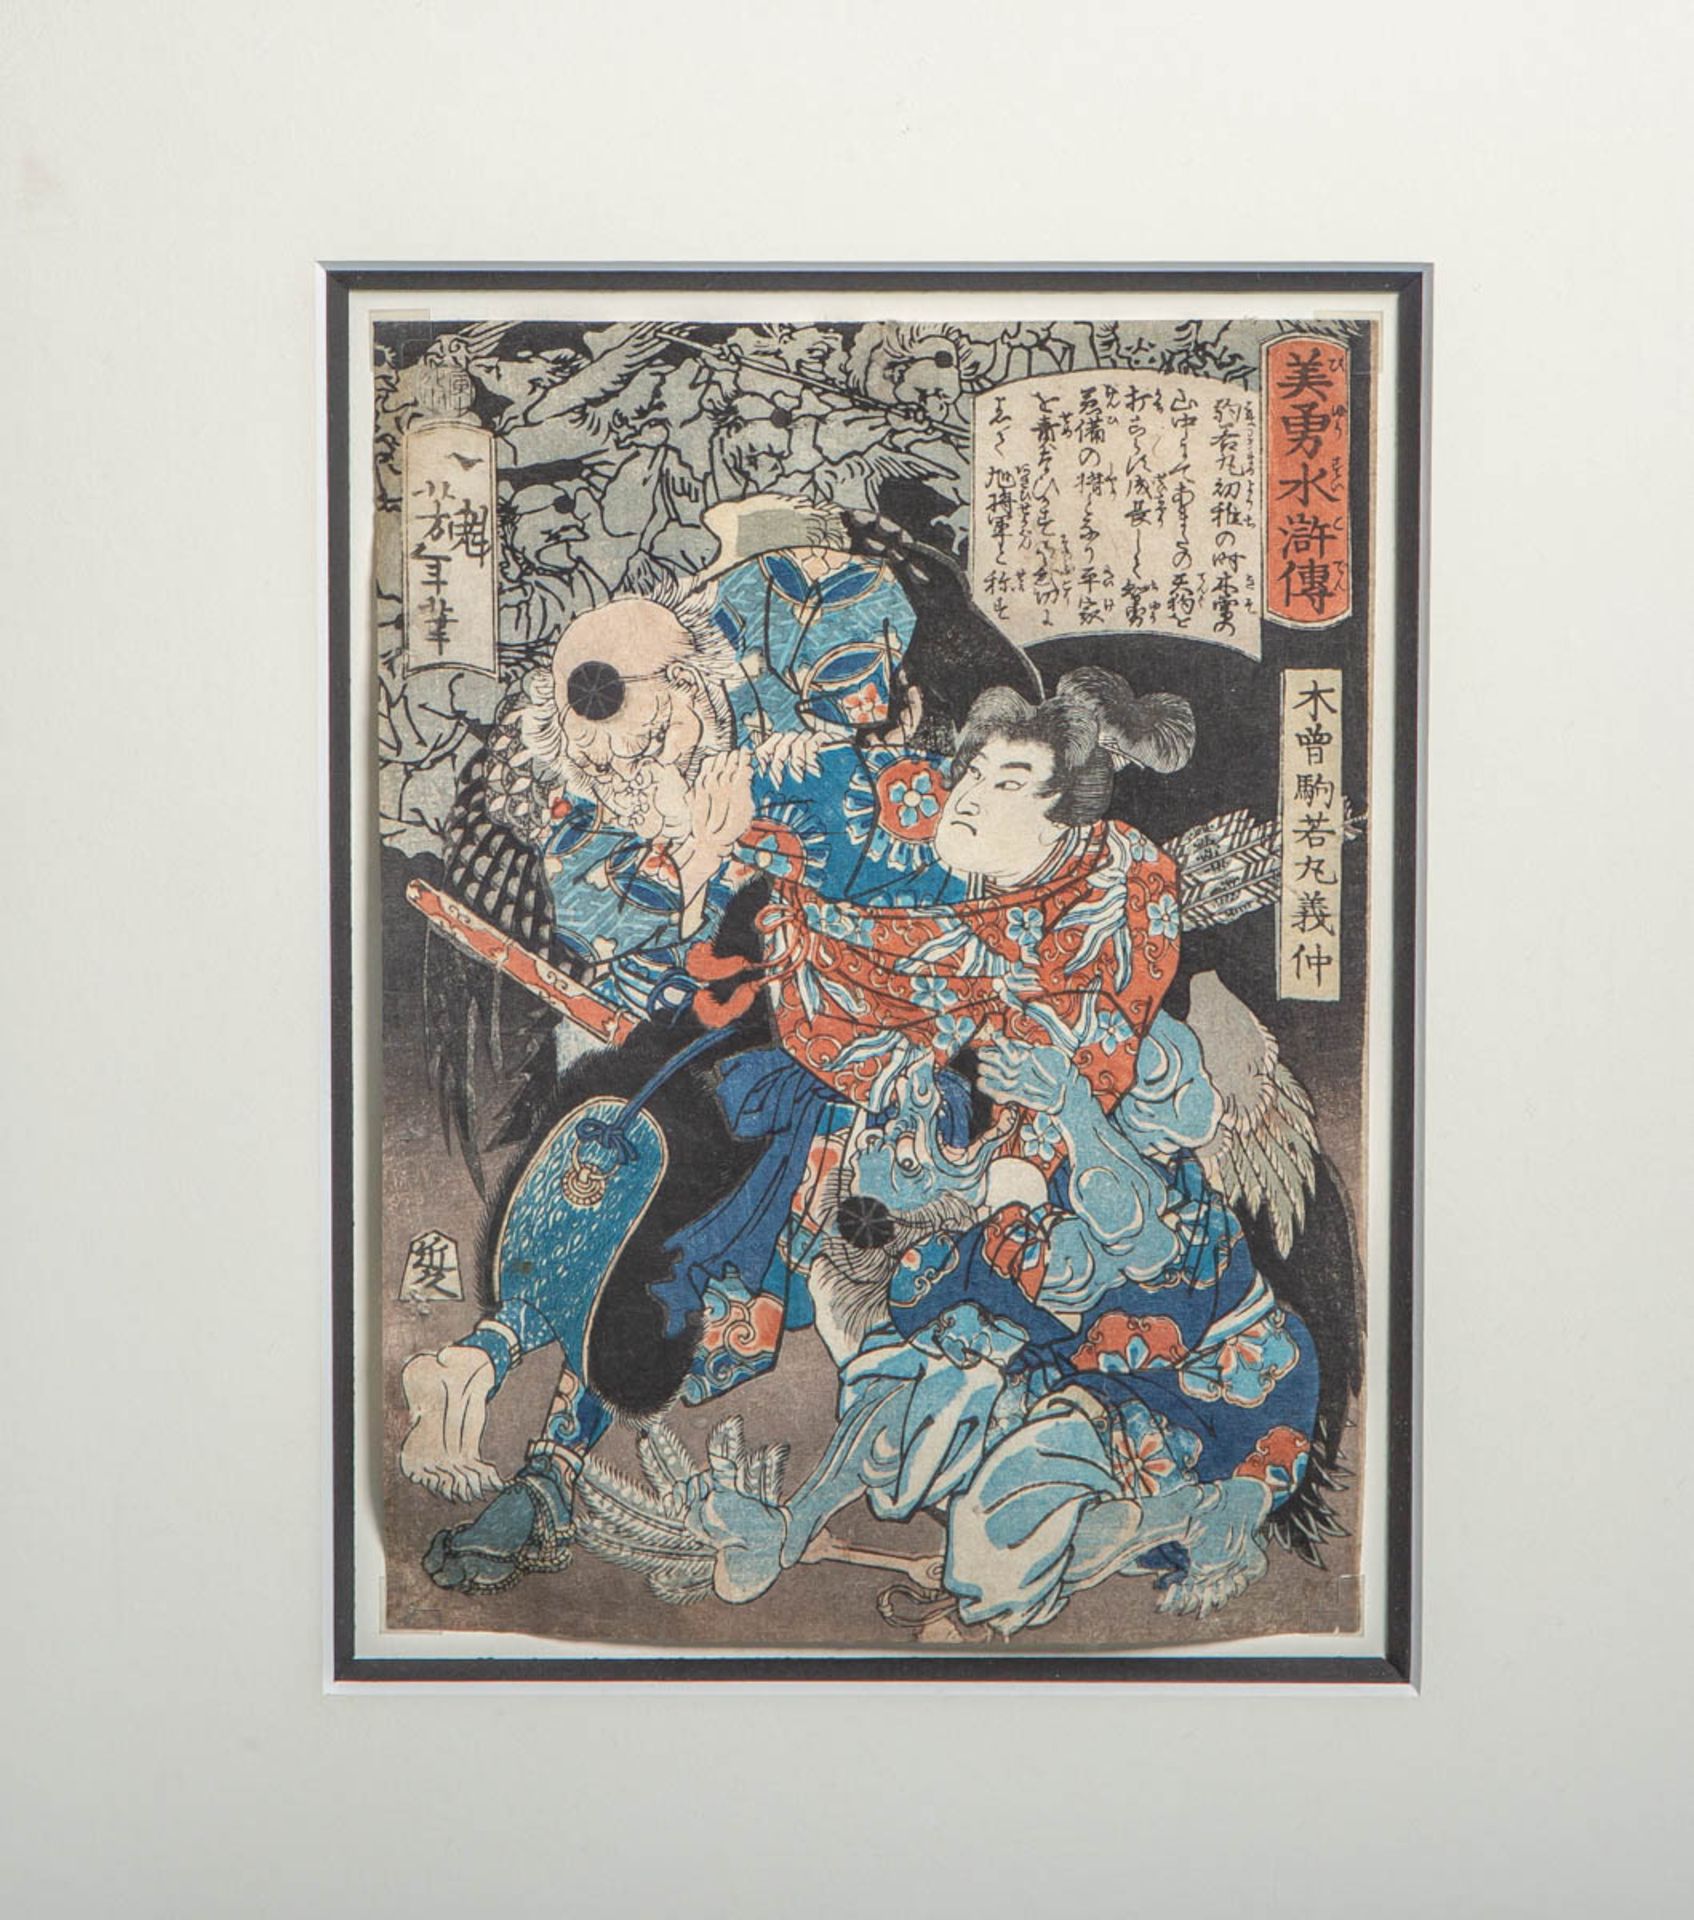 Taiso, Yoshitoshi (1839 - 1892), "Kiso Komawakamaru Yoshinaka conquering the Tengu on the Kiso Mount